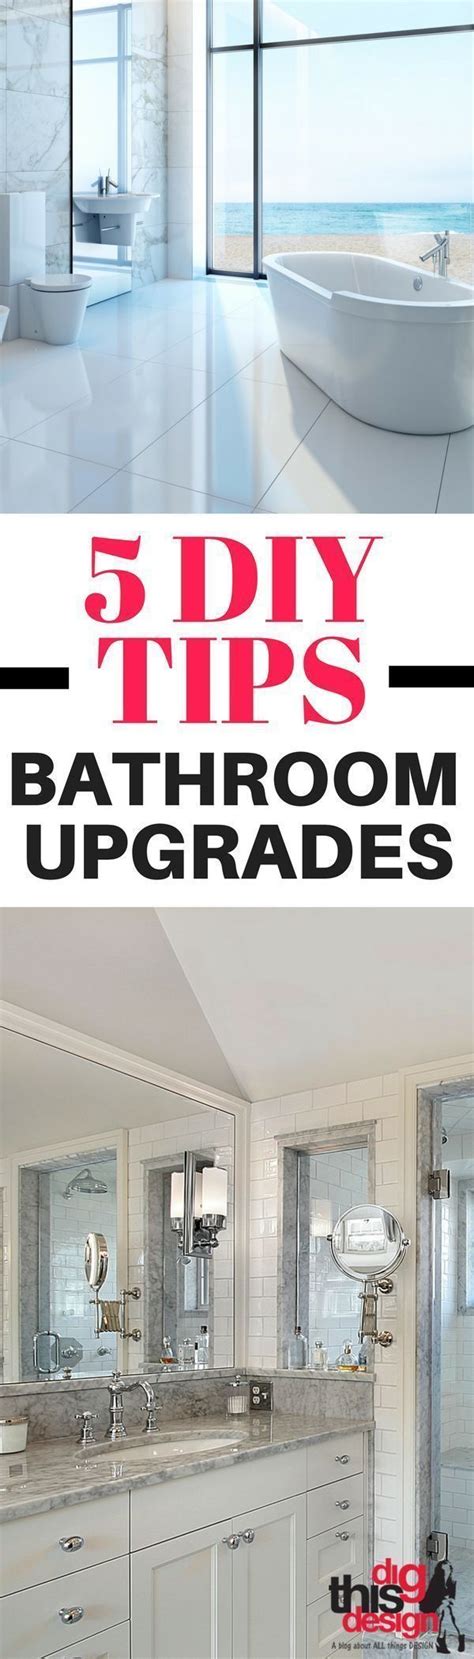 Bathroom Upgrades 5 Diy Tips Easy Bathroom Upgrades Diy Bathroom